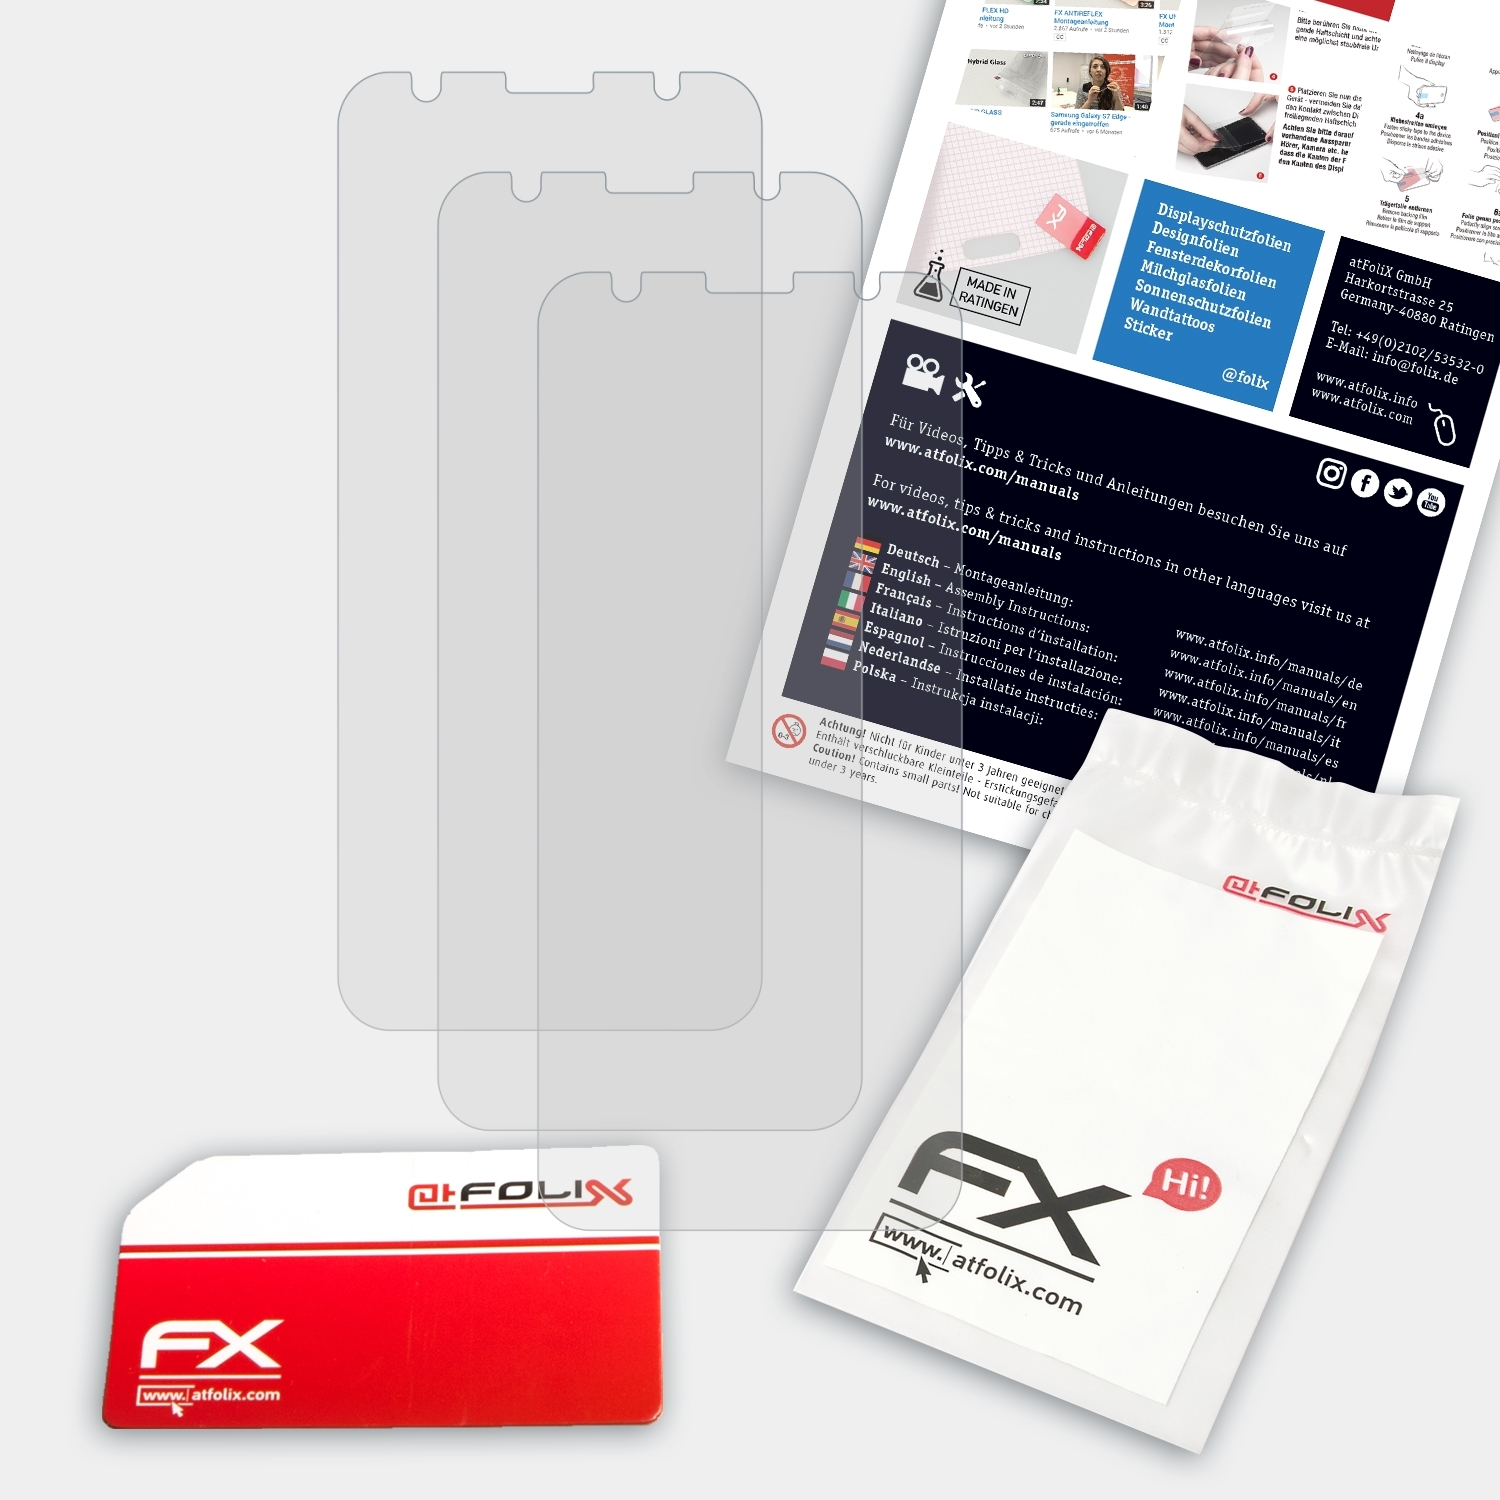 (ZB556KL)) Zenfone Asus Displayschutz(für FX-Antireflex 3x Max ATFOLIX